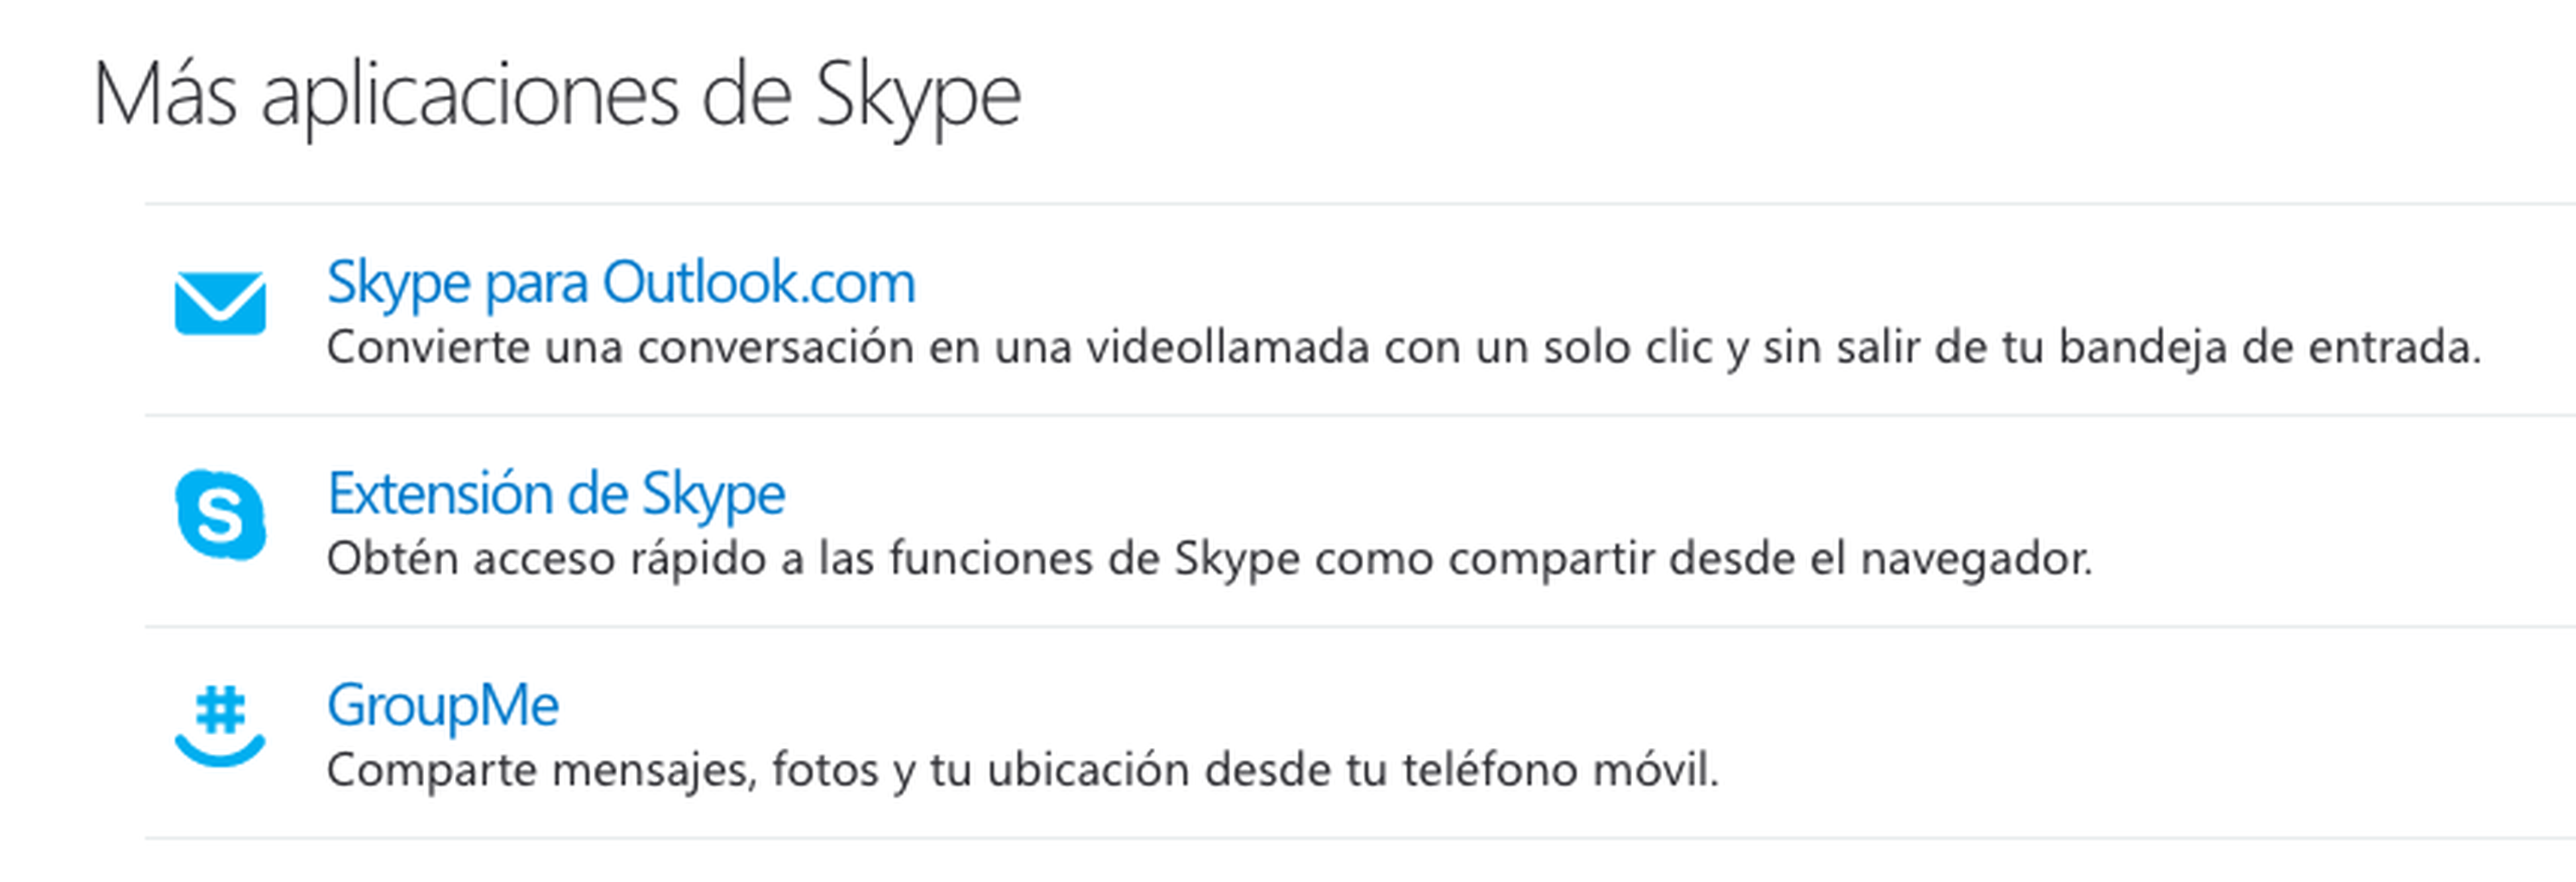 Más aplicaciones de Skype